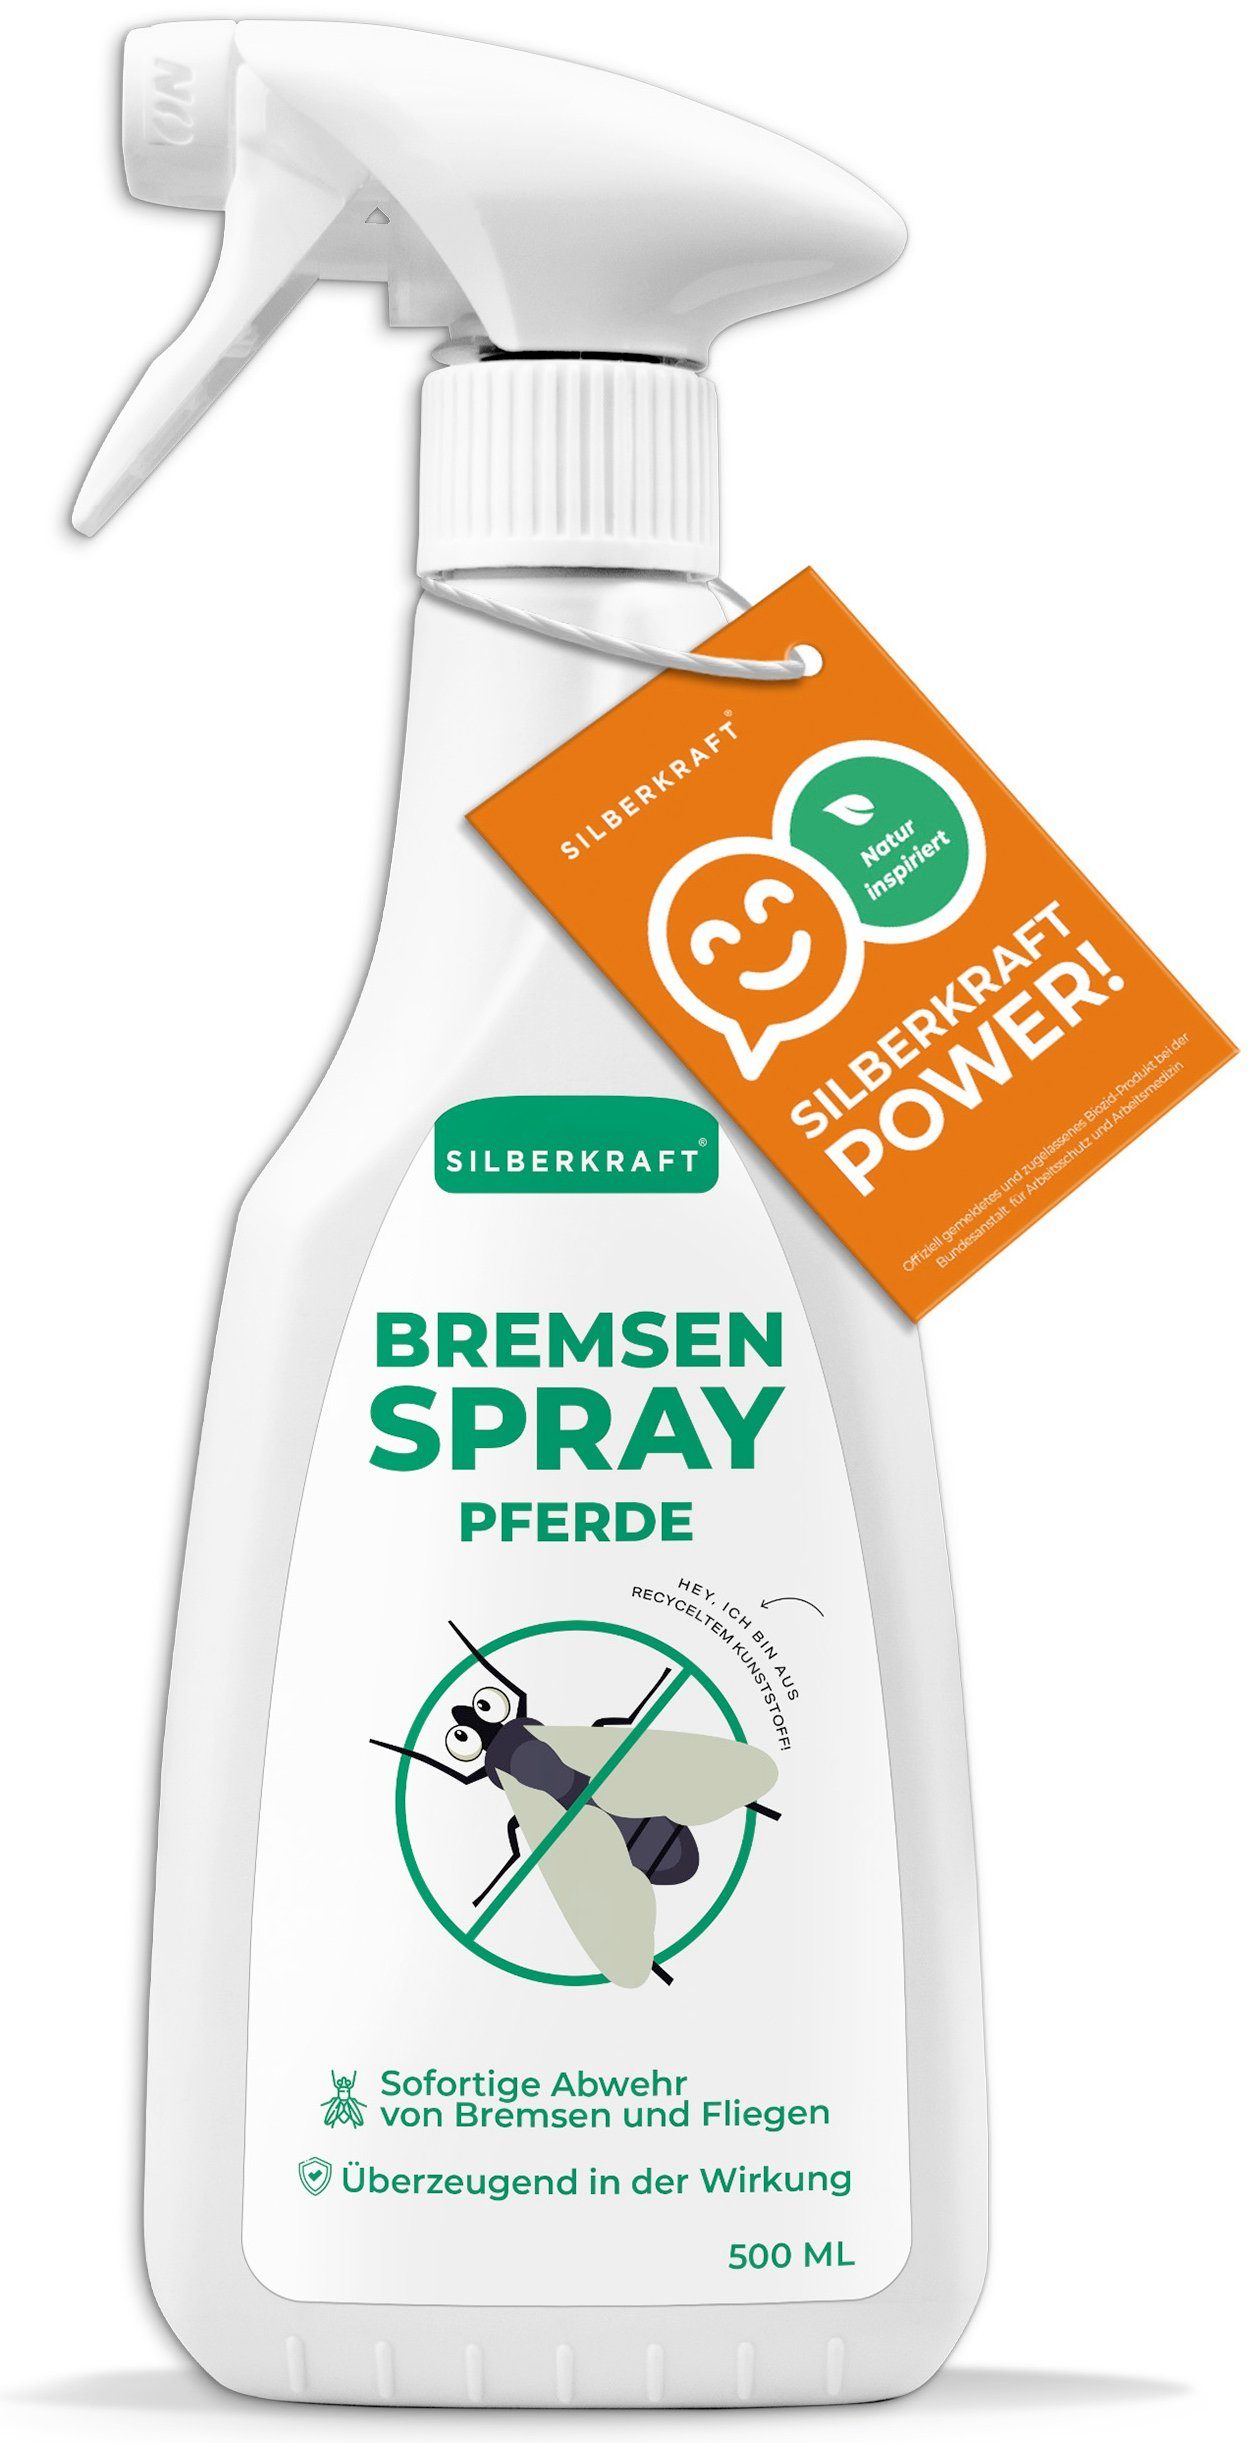 Silberkraft ml, 1-St. für 500 Pferde, Insektenspray Bremsen-Spray